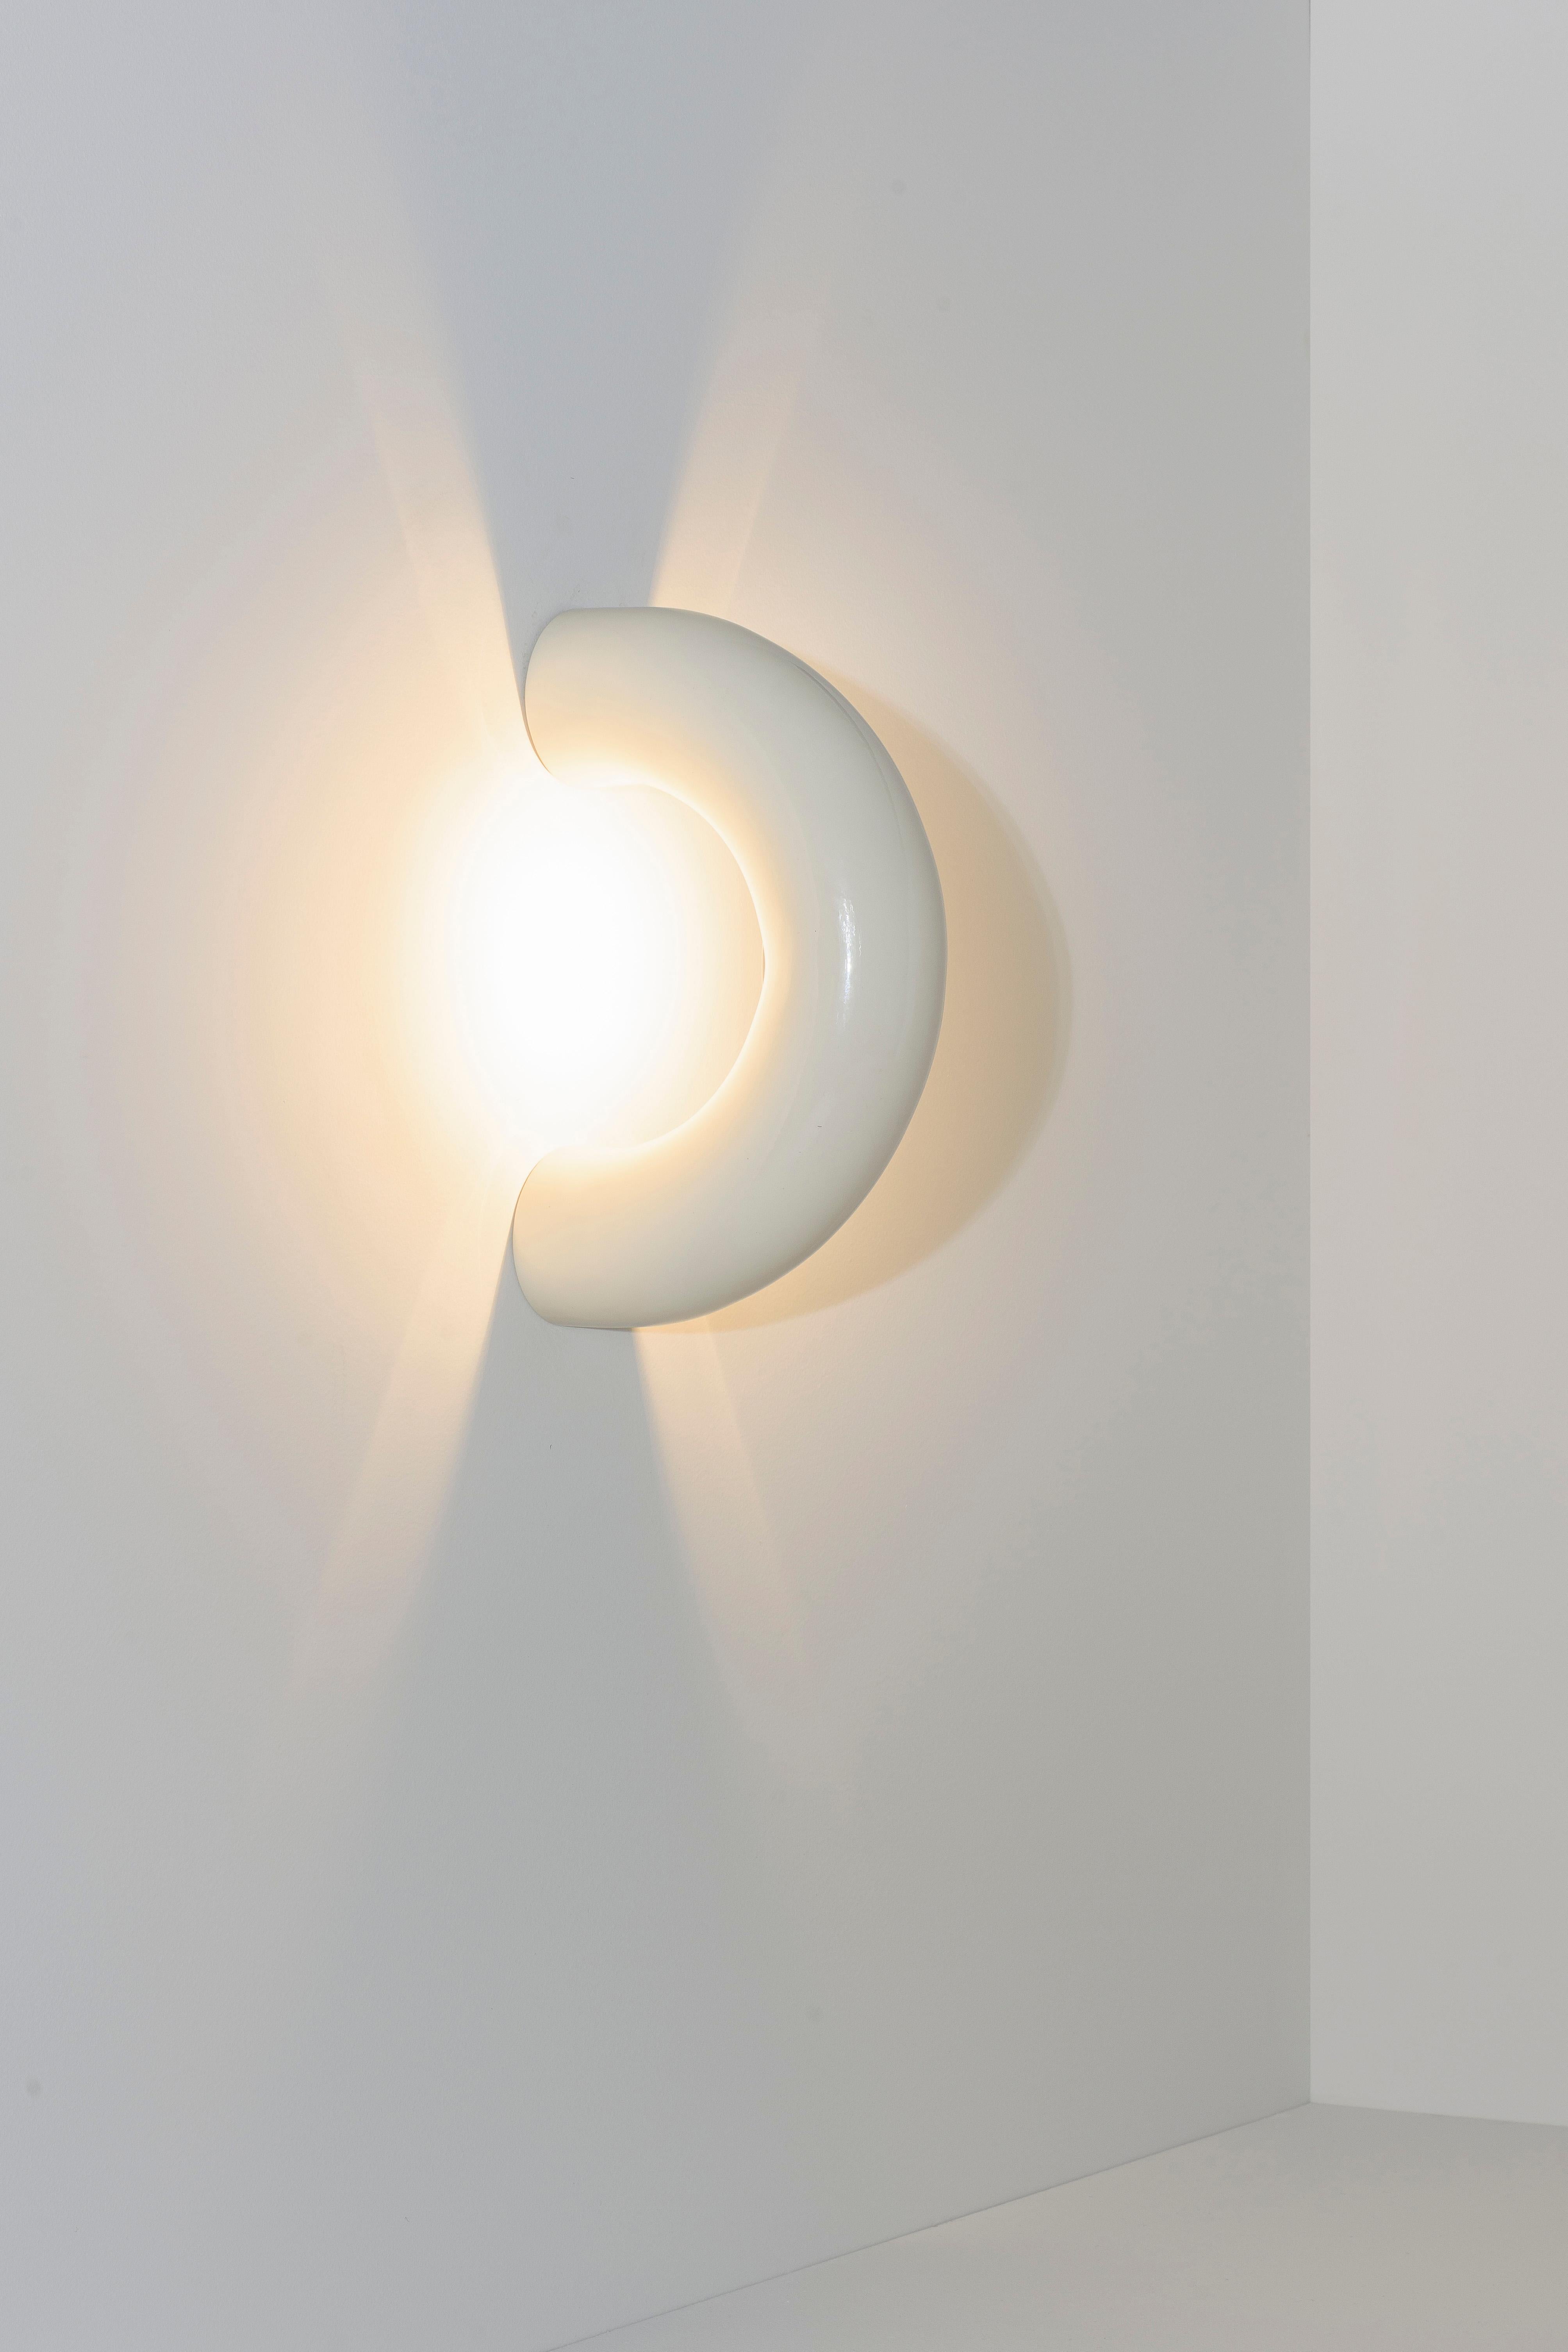 Die Arco-Lampen bestehen aus einem verlängerten Kreisausschnitt, der sich durch die Diskontinuität seiner Form auszeichnet. Die Collection'S besteht aus Lampen, die die Oberflächen, die sie berühren, zu durchdringen scheinen und sie sanft